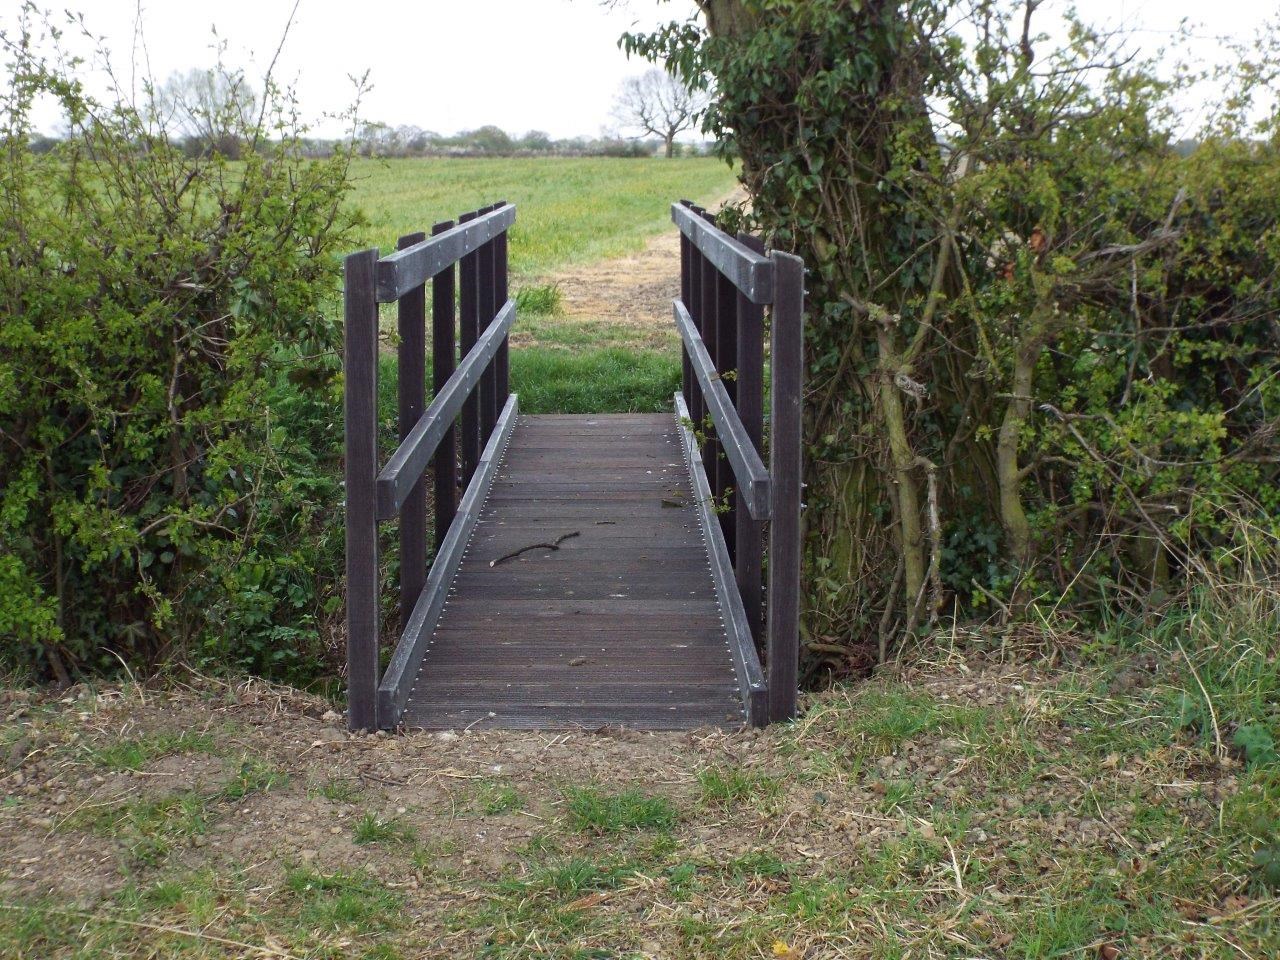 A GRP footbridge